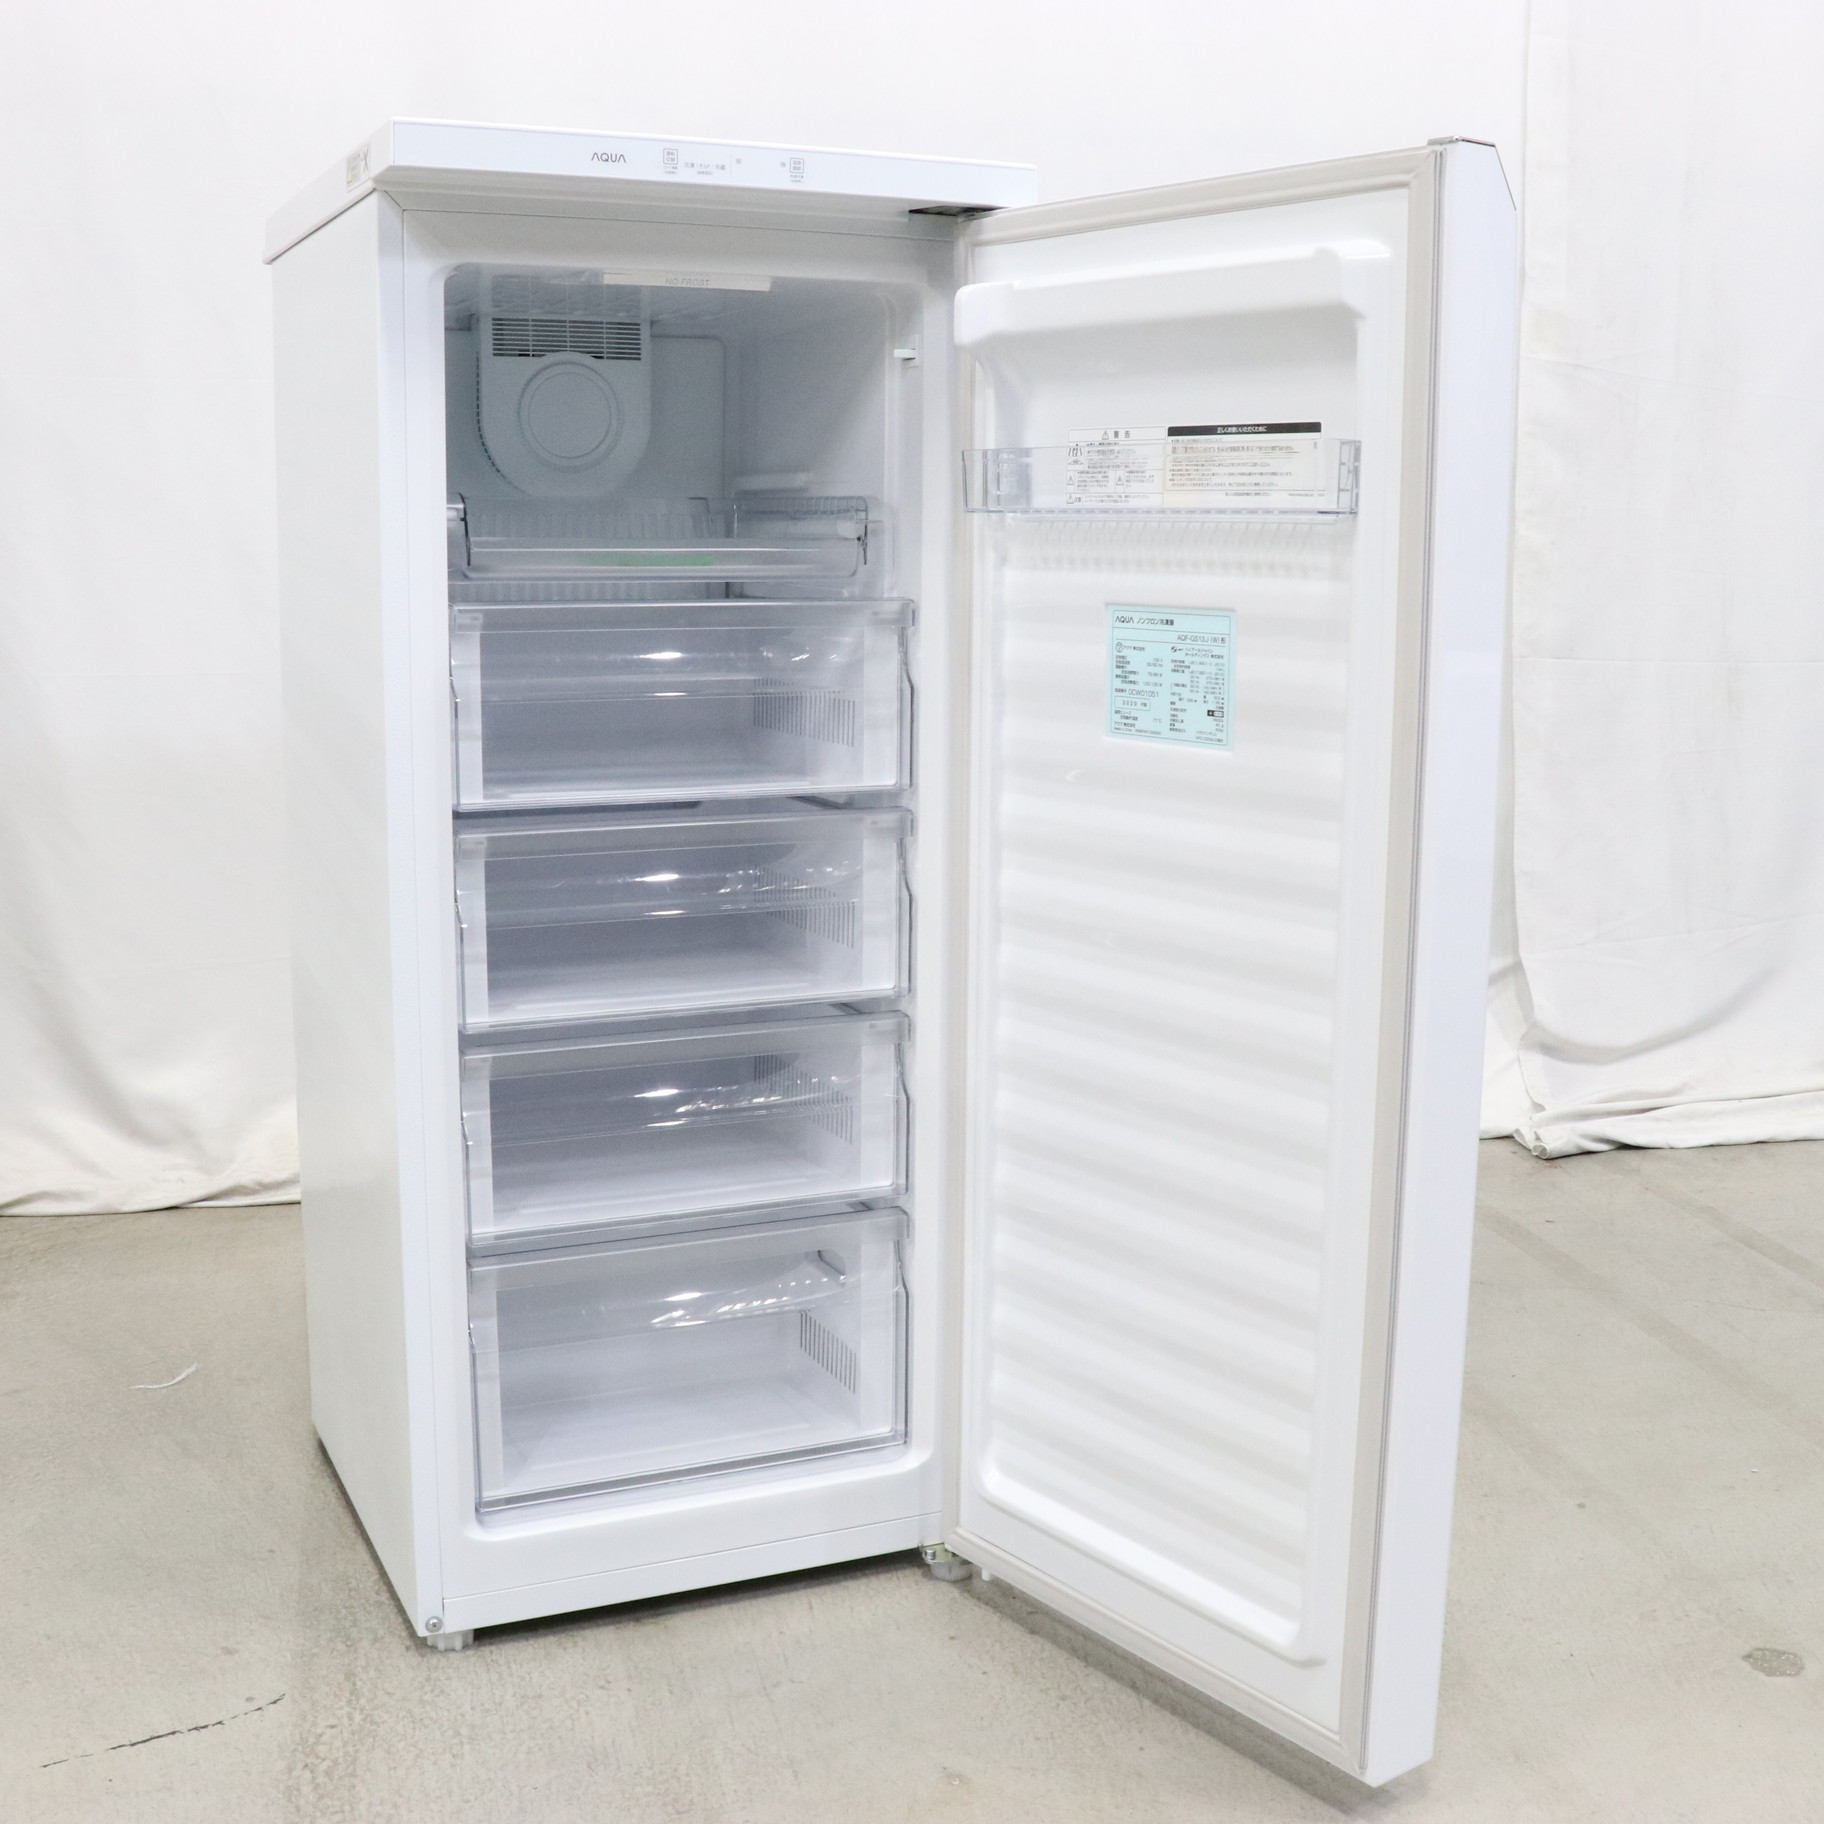 アクア AQF-GS15M(W) 冷凍庫 (153L・右開き) クリスタルホワイト 通販